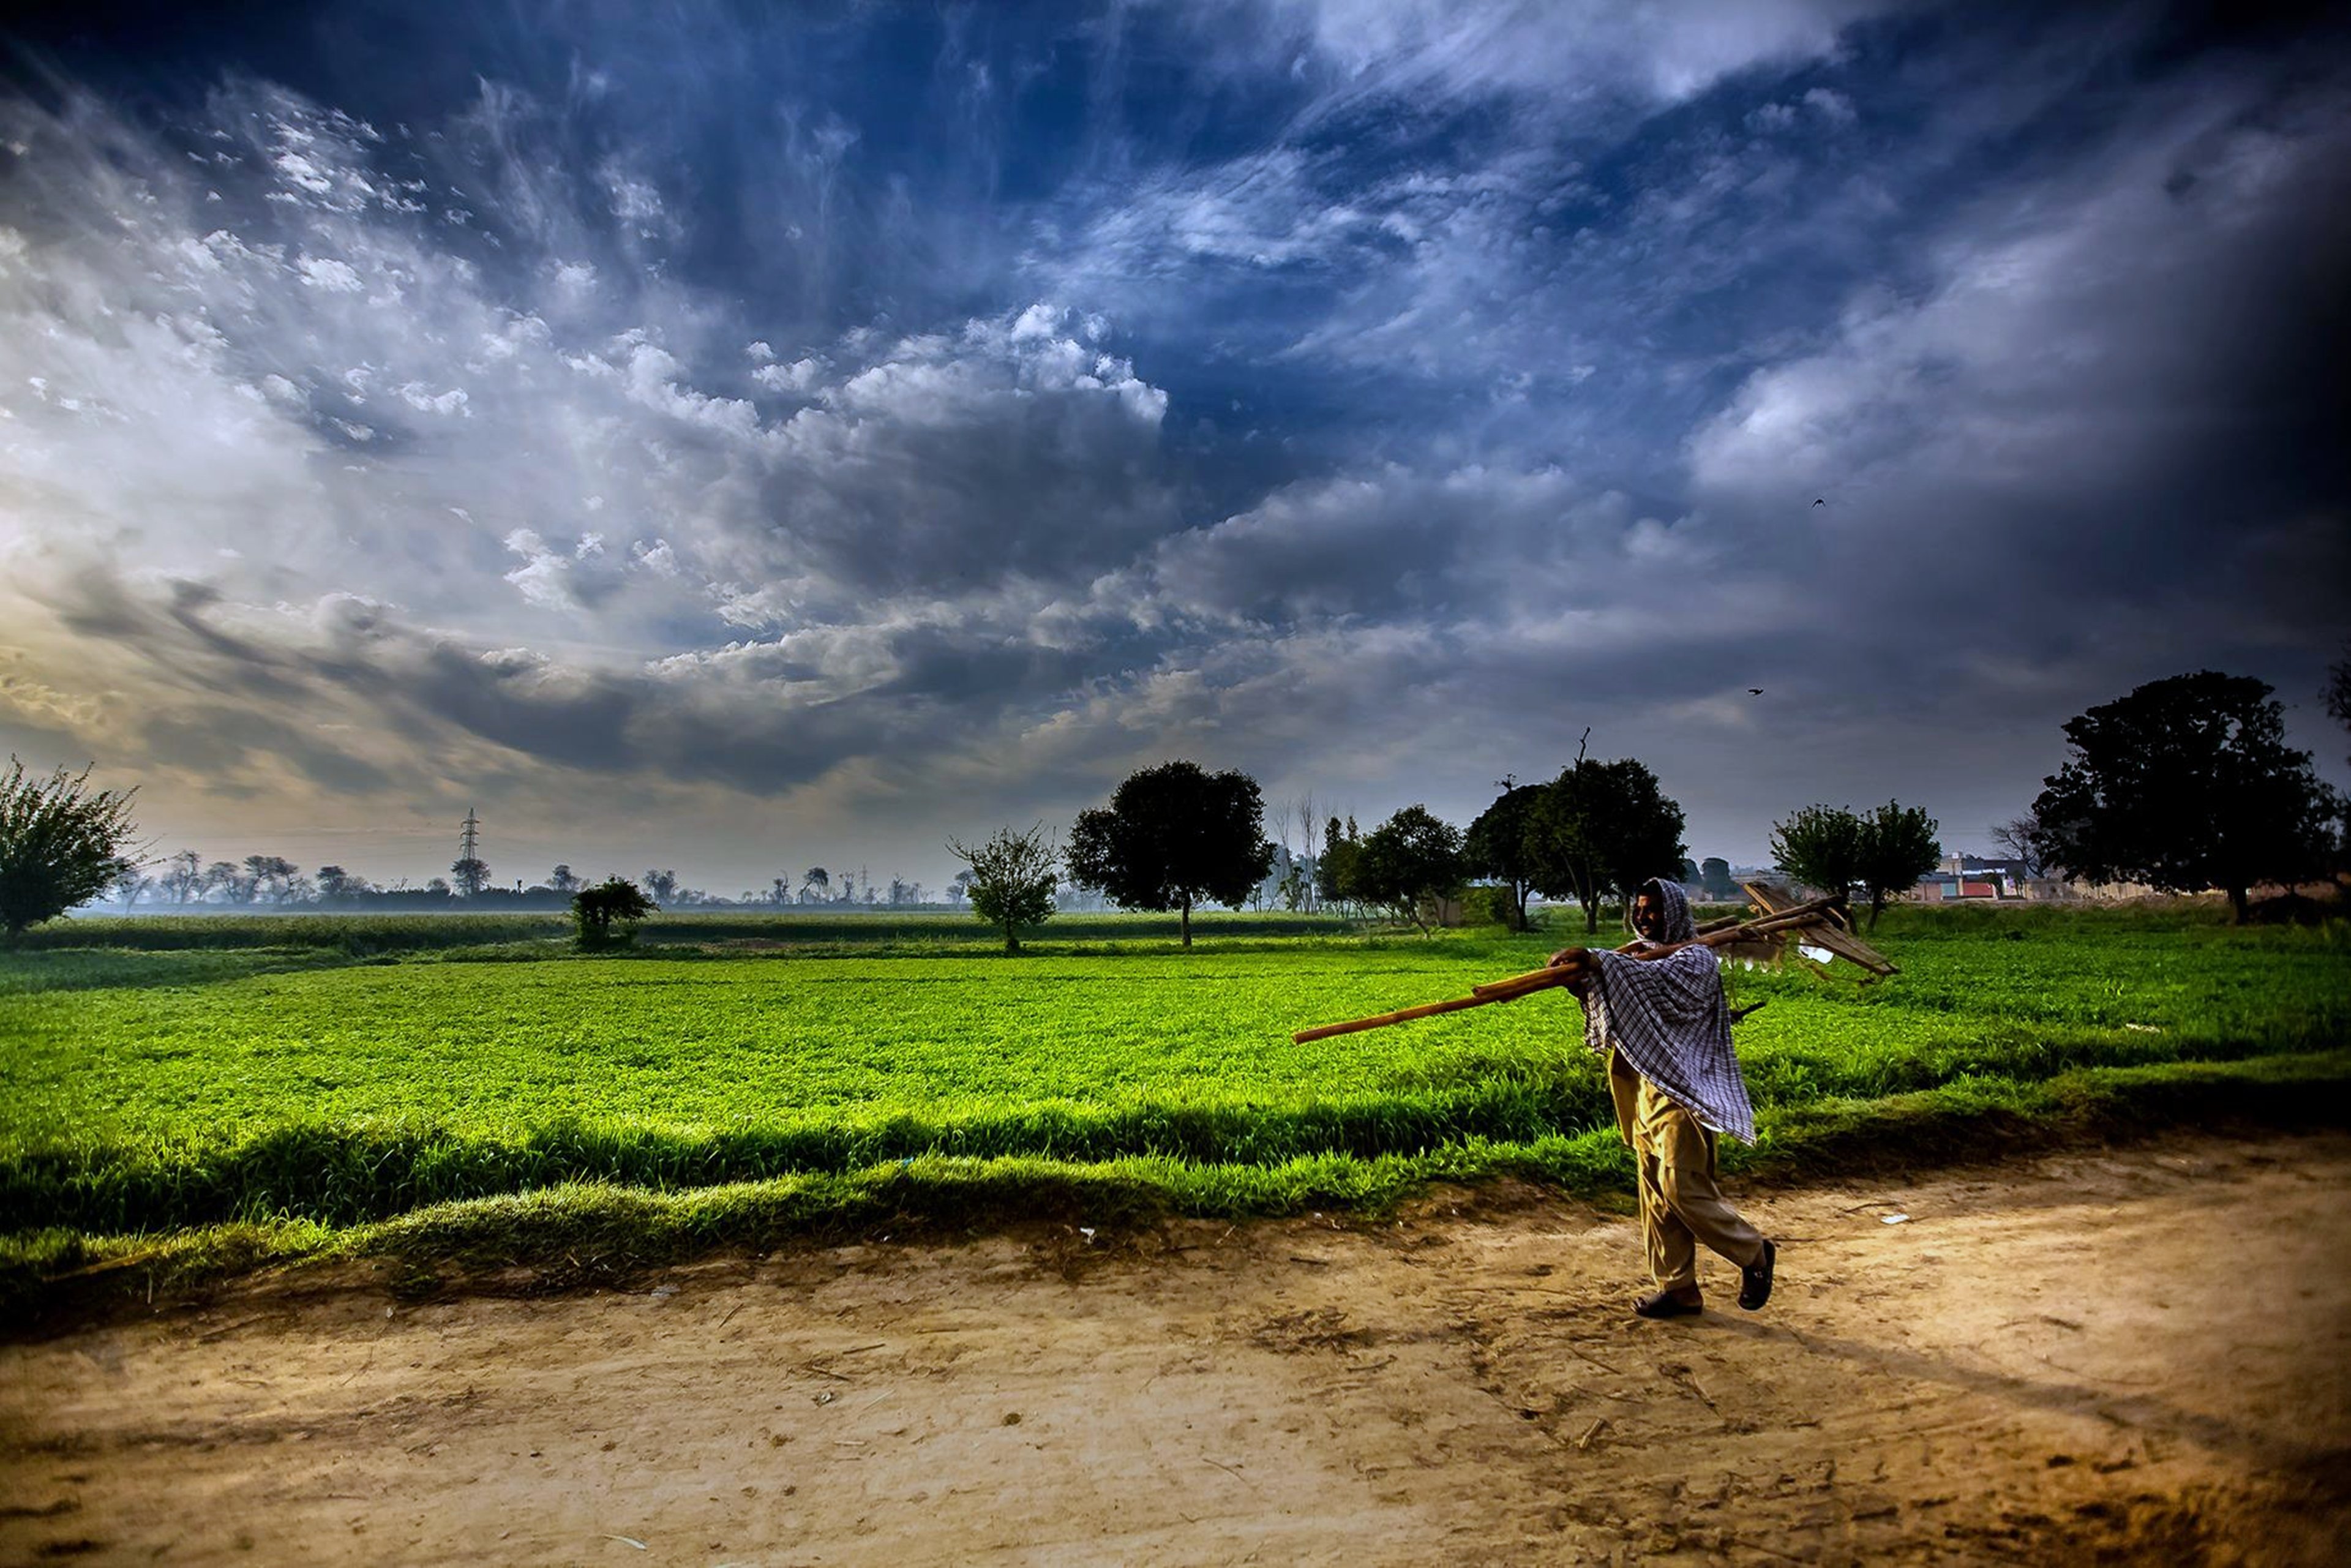 pakistan, Landscapes, Man, Farmer, Agriculture, Clouds ...